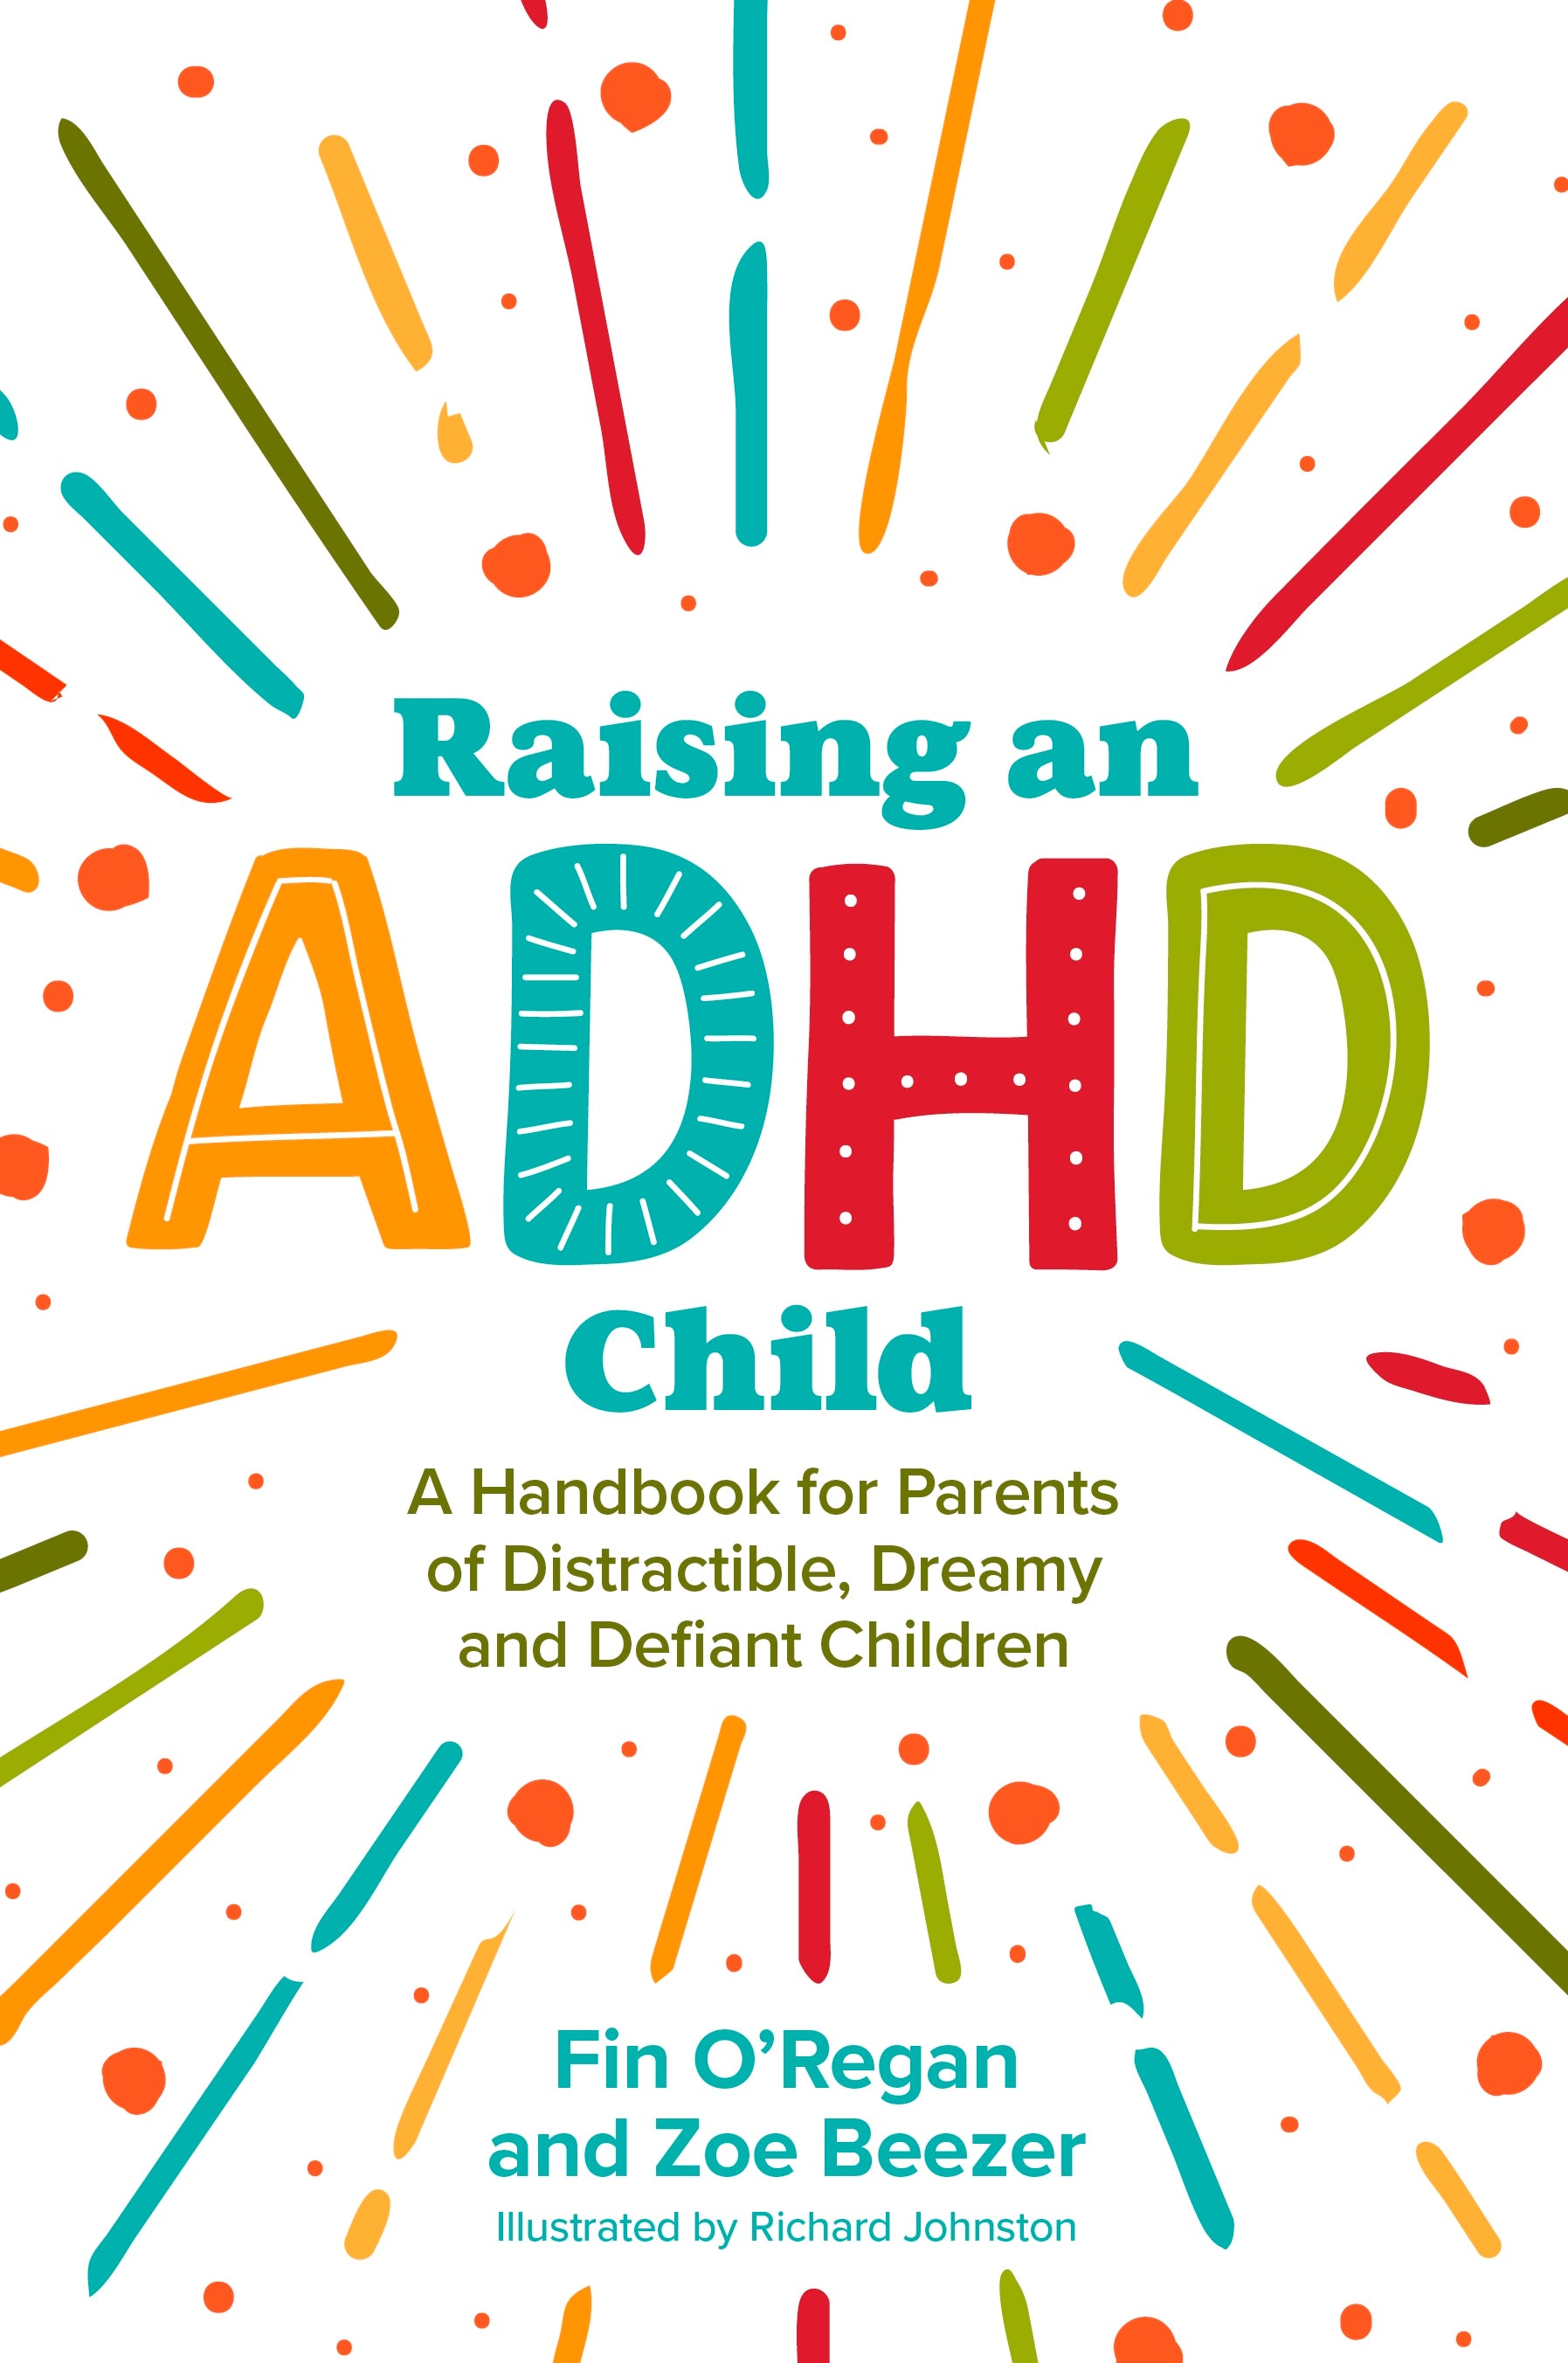 Raising an ADHD Child by Fintan O'Regan, Zoe Beezer